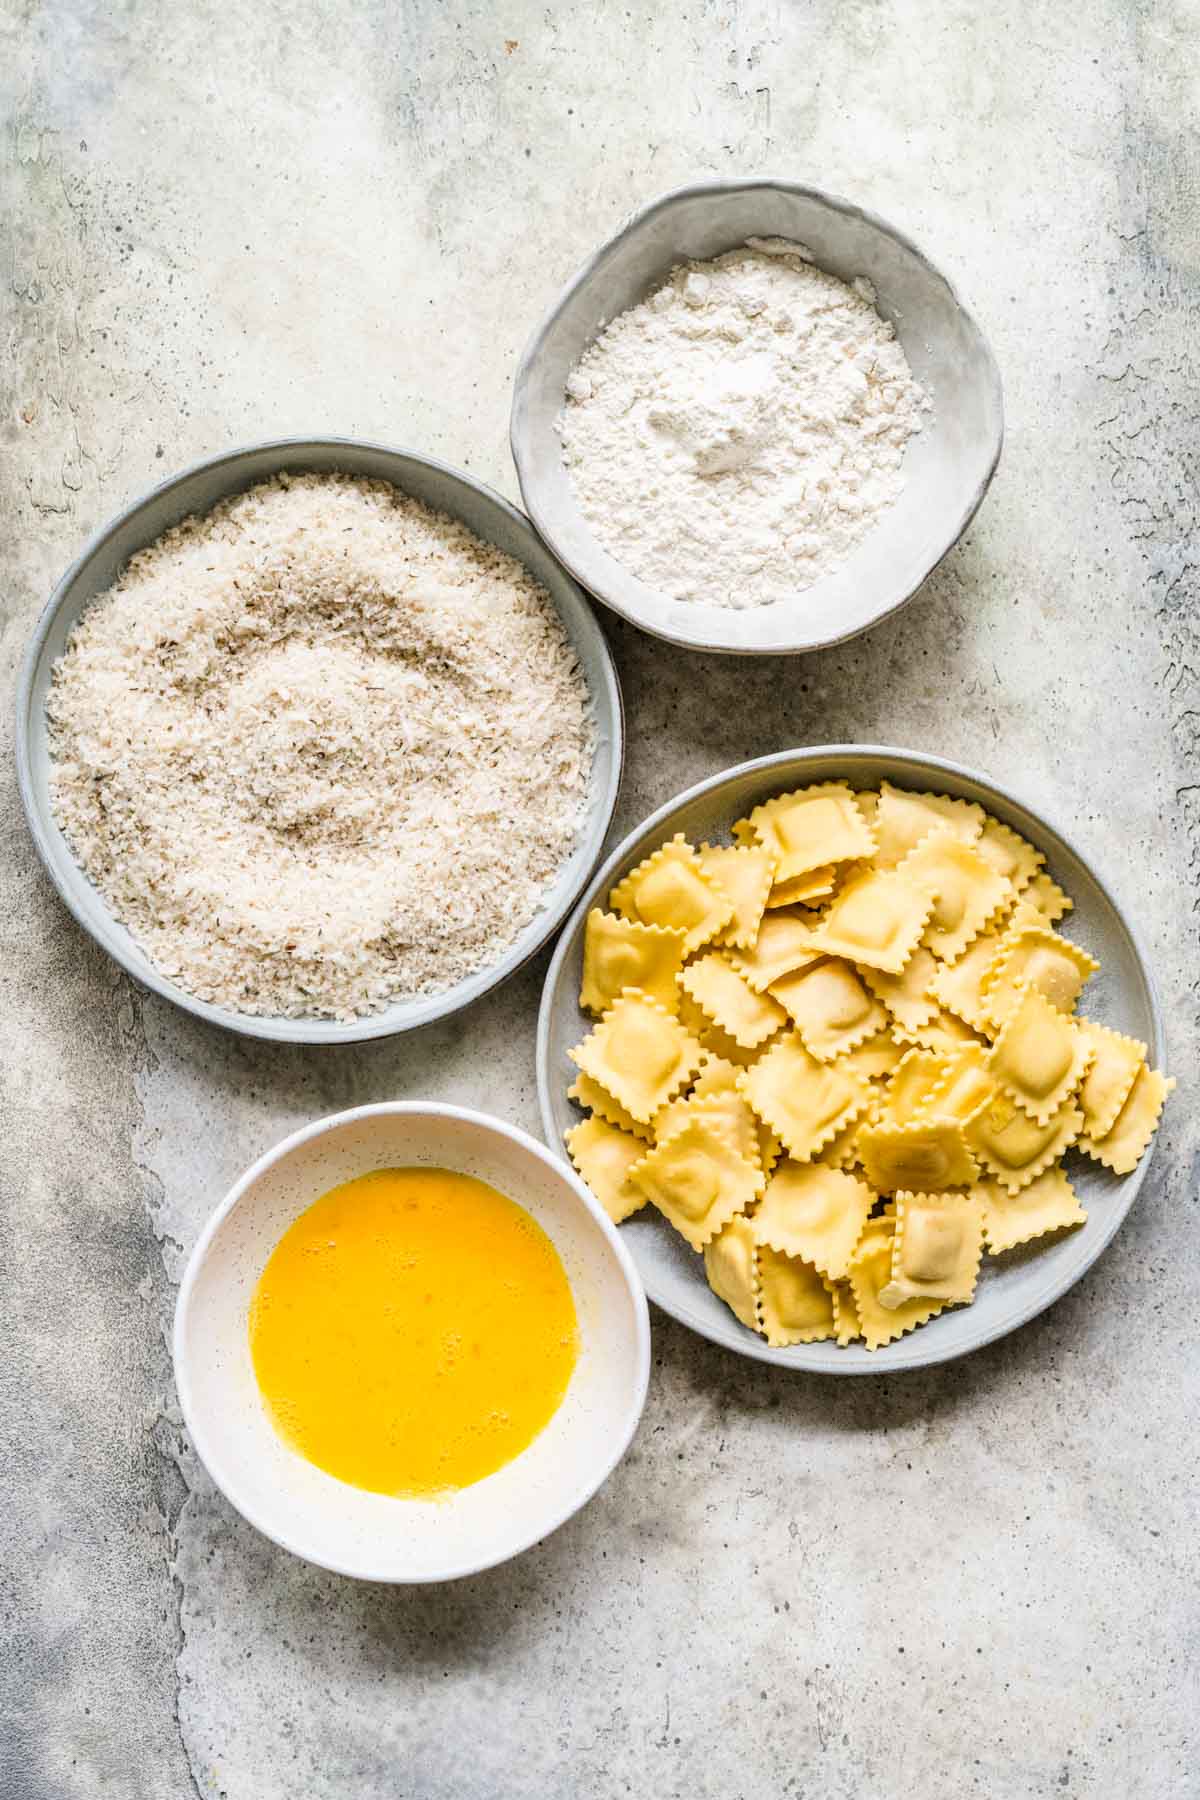 Fried Ravioli ingredients in separate bowls